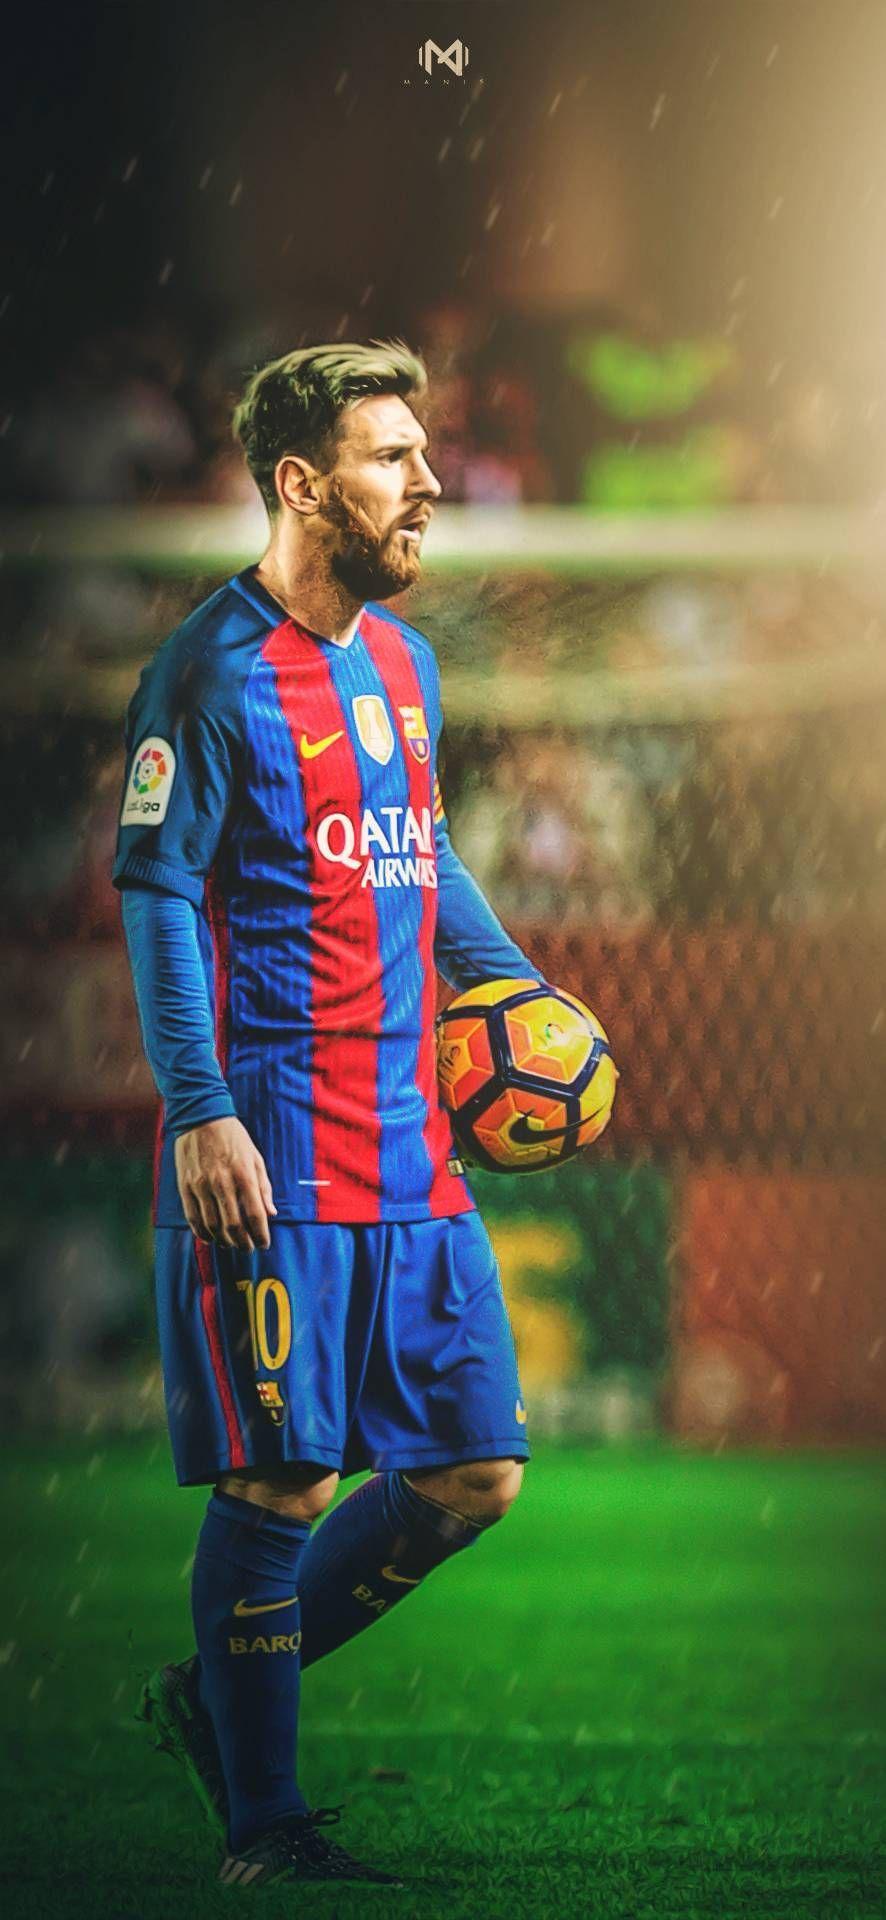 Messi Full HD Wallpapers: Nếu bạn yêu mến Lionel Messi và muốn đưa hình ảnh của anh ta lên màn hình của mình, thì hình nền Full HD Messi là sự lựa chọn hoàn hảo cho bạn. Với chất lượng hình ảnh tuyệt vời, bạn sẽ được tận hưởng toàn bộ vẻ đẹp của Messi trên màn hình máy tính của mình.